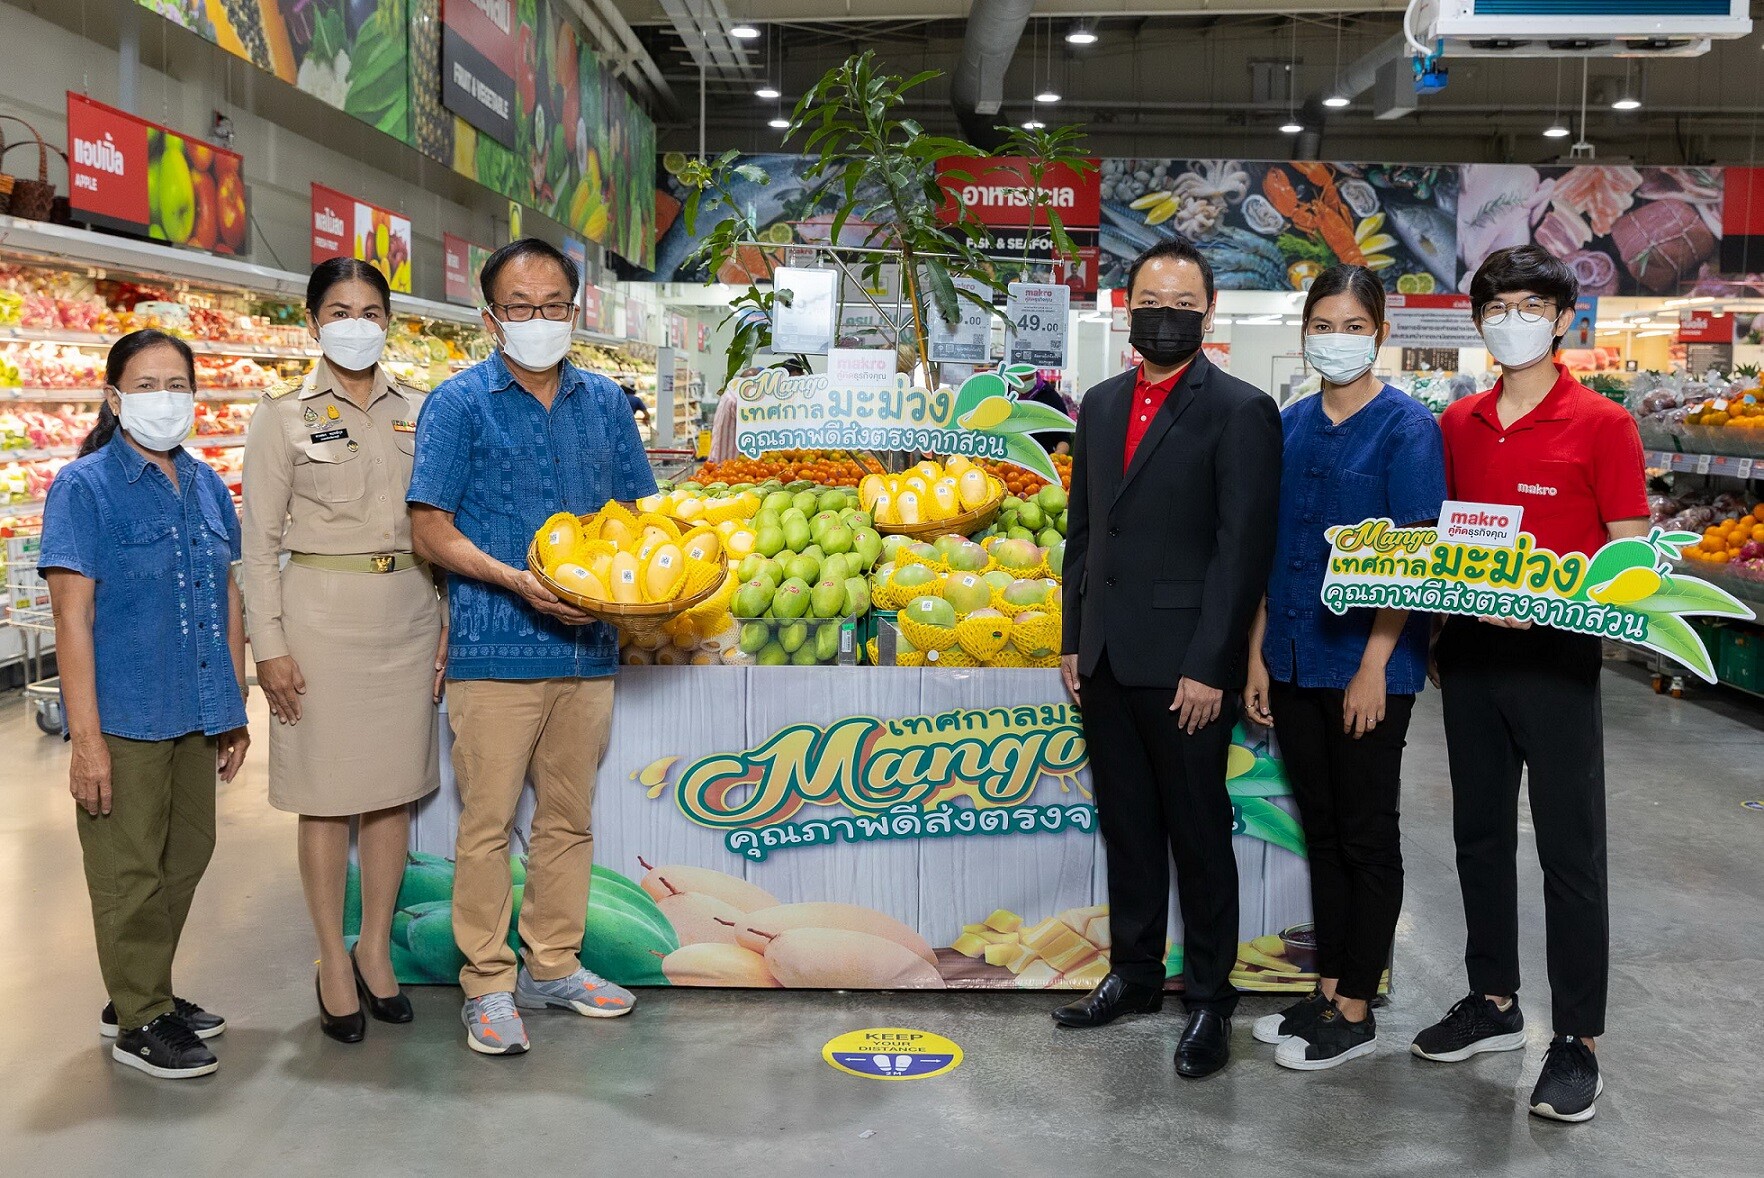 แม็คโคร จุดพลุ "เทศกาลมะม่วง" ช่วยเหลือเกษตรกรทั่วไทย รับซื้อผลผลิตสดจากสวน 3,500 ตัน เพิ่มดีกรีกระตุ้นบริโภค รับดีมานด์ร้านอาหาร โรงแรม